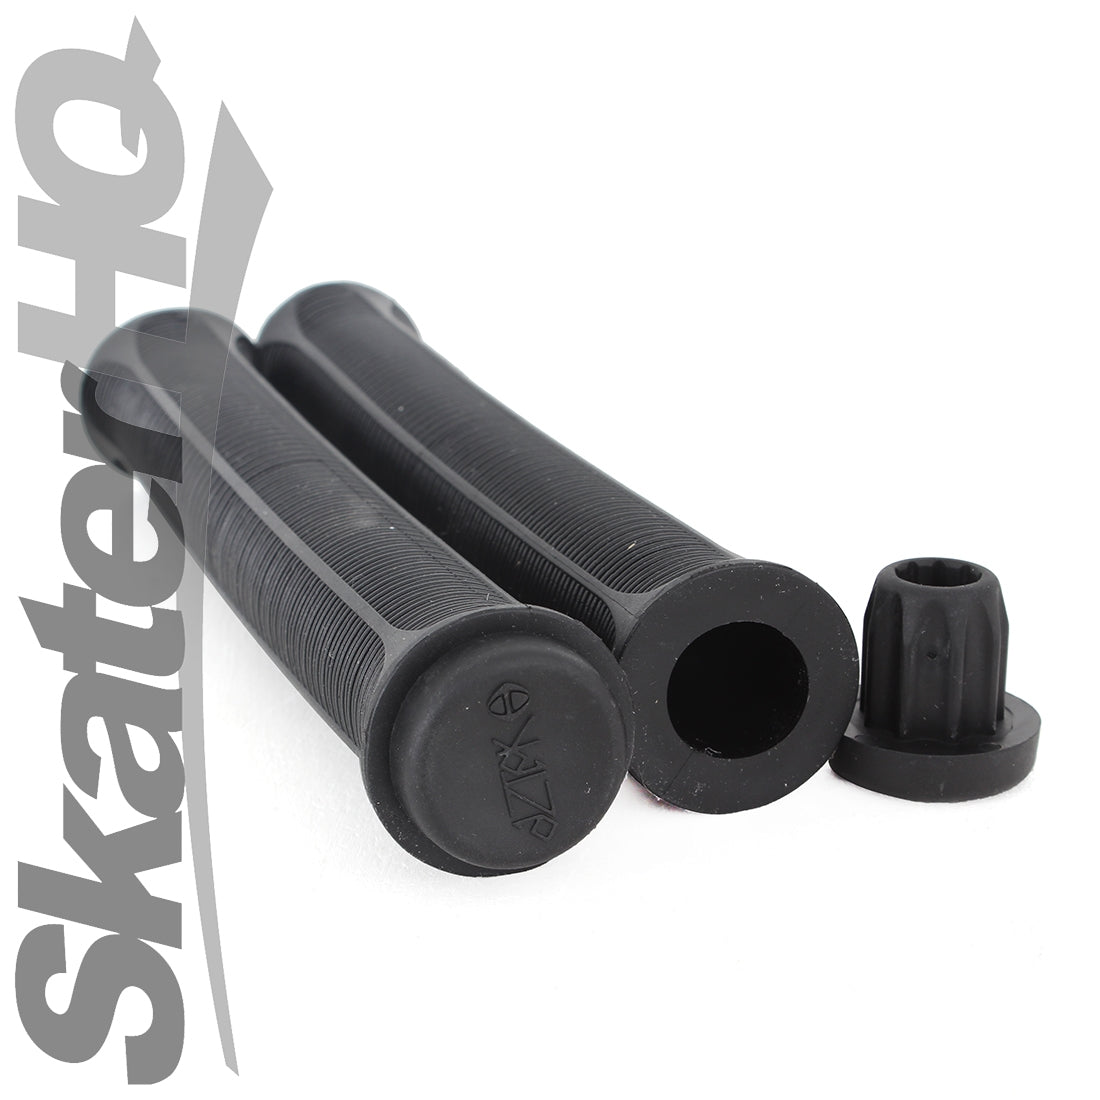 Aztek 190mm XL Grips - Black Scooter Grips